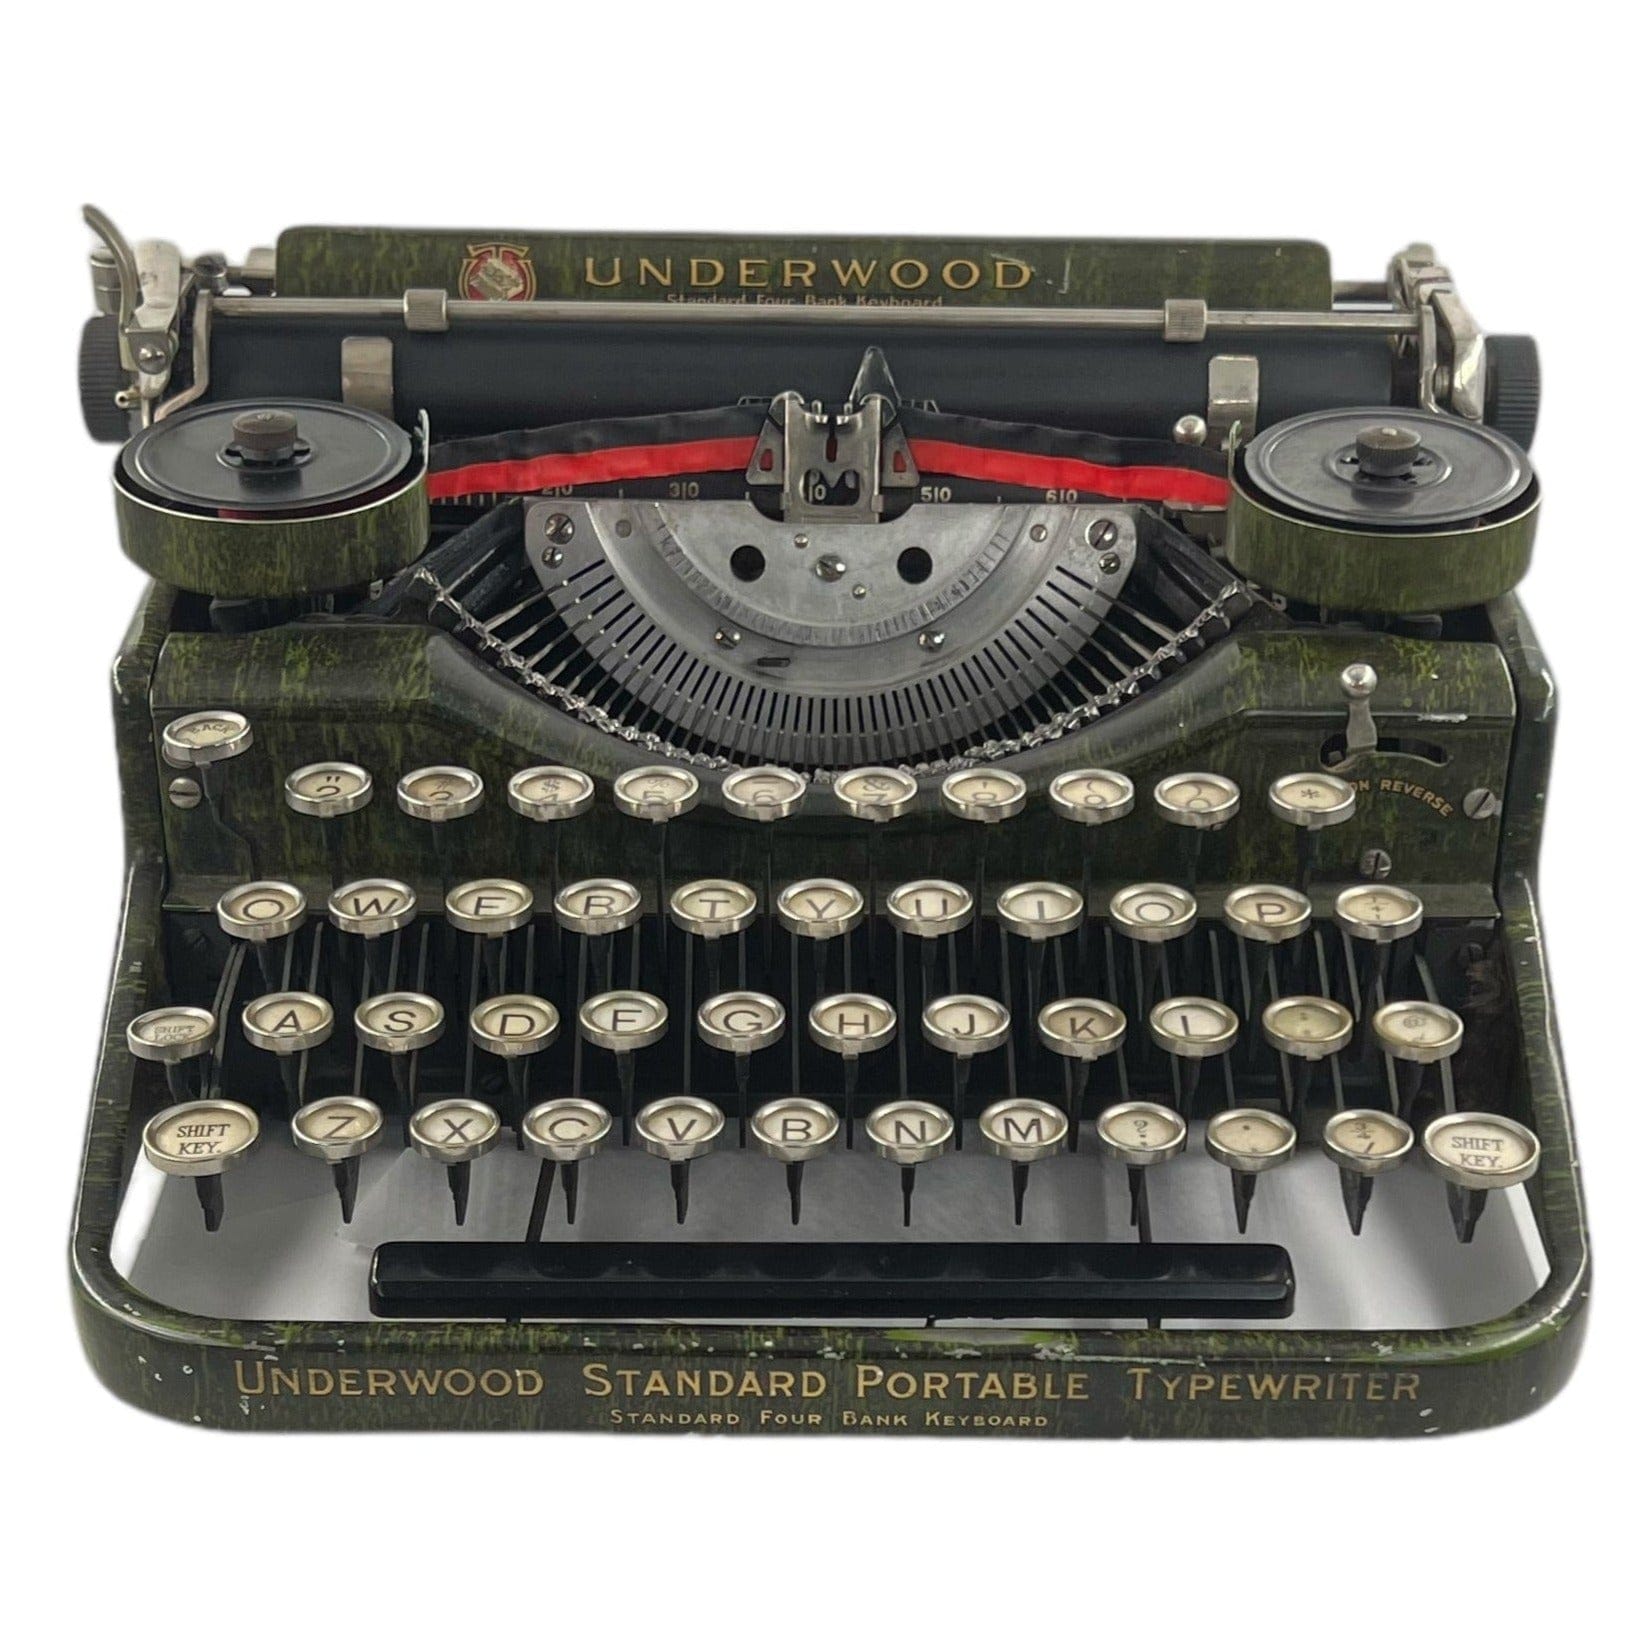 Toronto Typewriters Portable Typewriter Underwood 4 Bank (Wood Grain) Typewriter